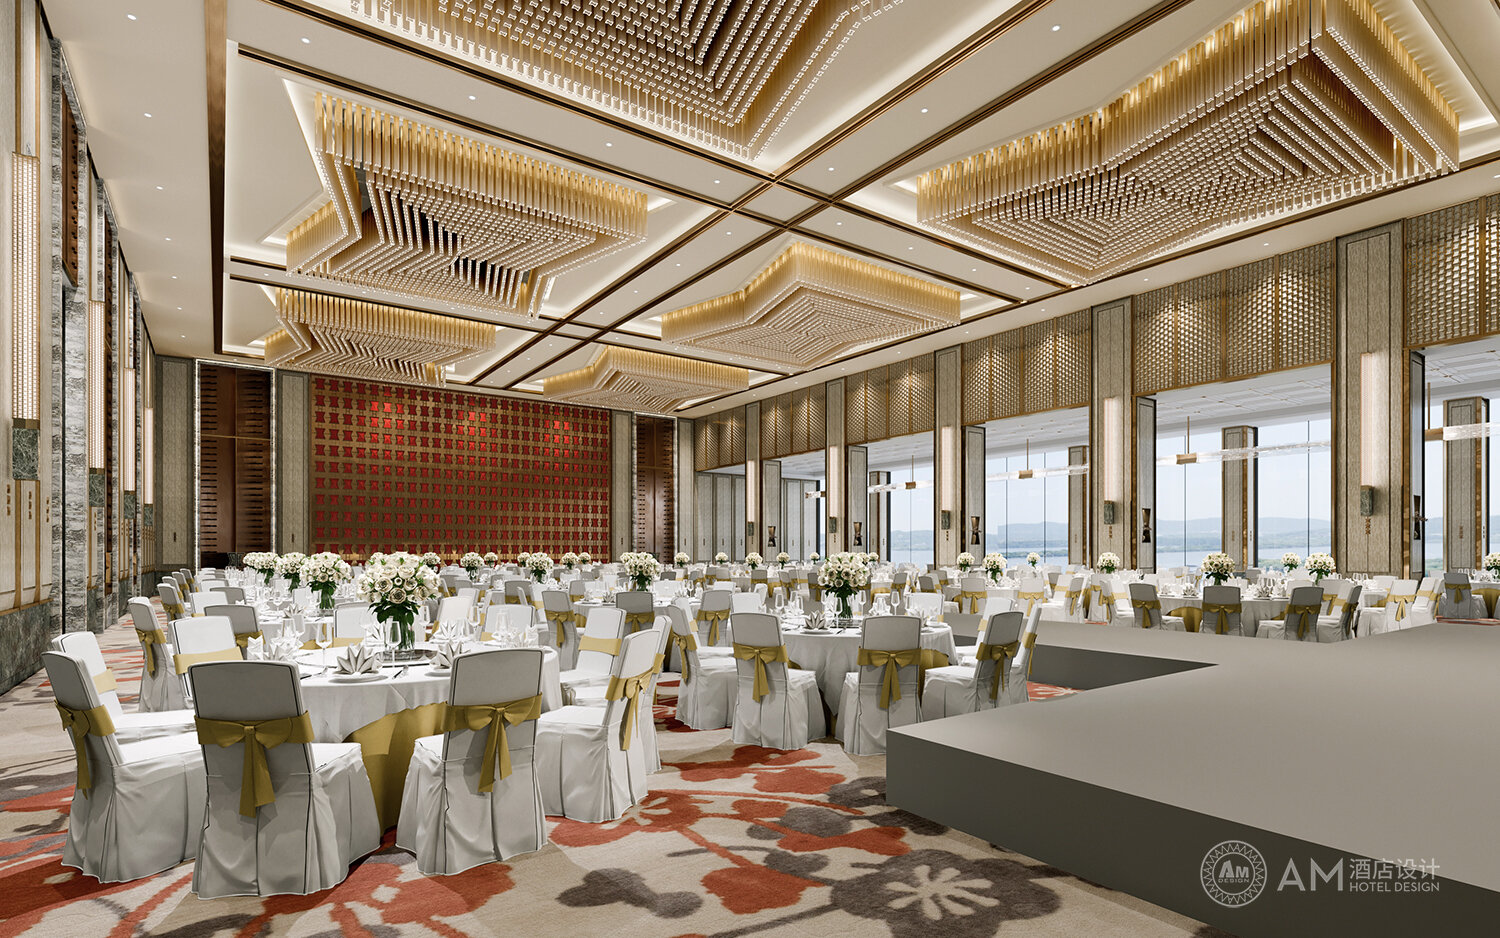 AM DESIGN | Banquet hall design of Shaanxi Nanhu Resort Hotel